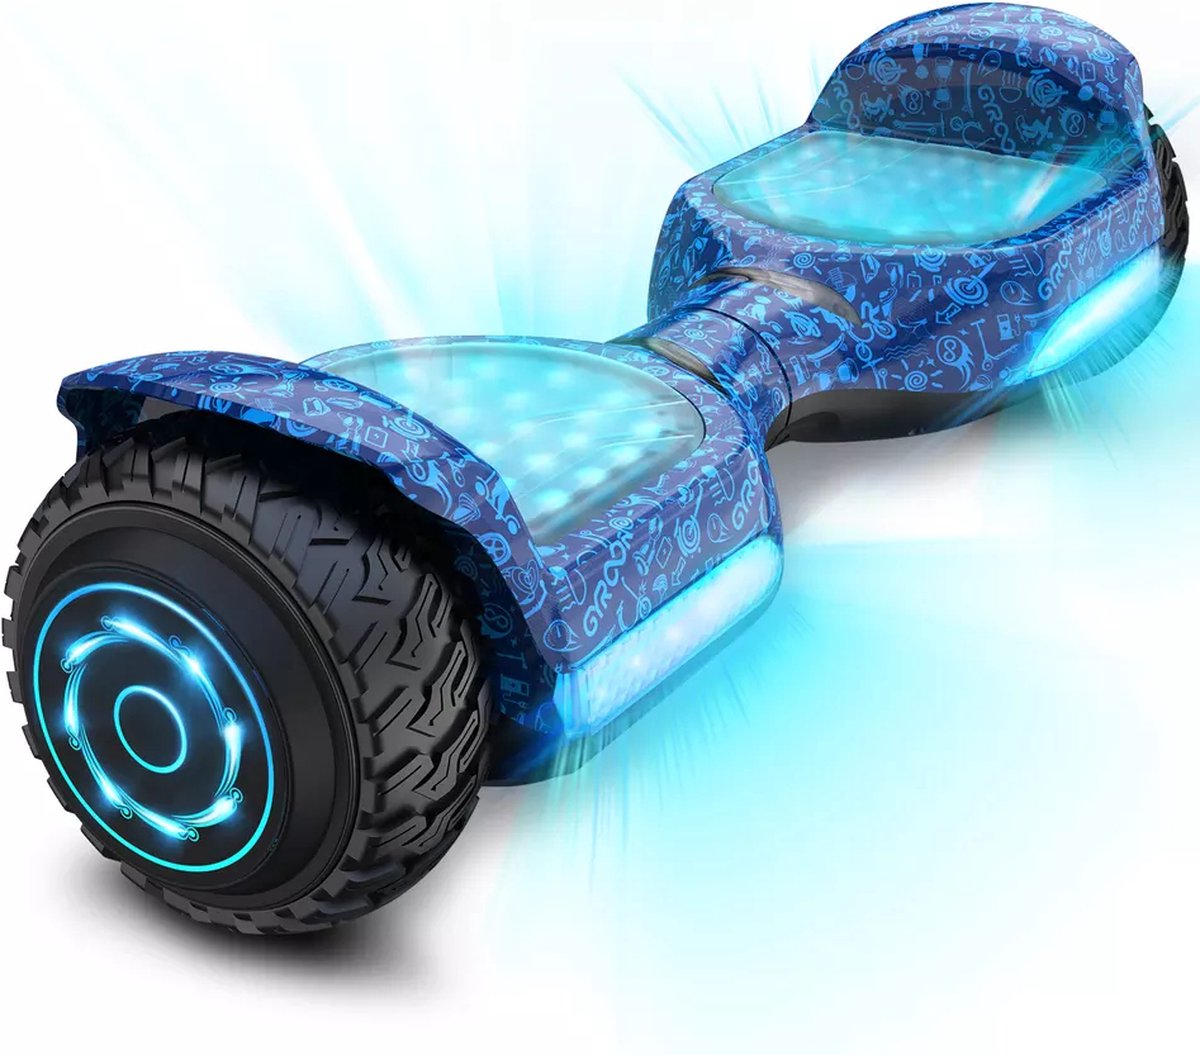 Gyroor G11- Flits wielen - Off-road hoverboard 6.5inch- UL 2272 Hoogste Niveau veiligheidskeuringscertificaat – uniek App funcite - Bluetooth speakers-Blauw
